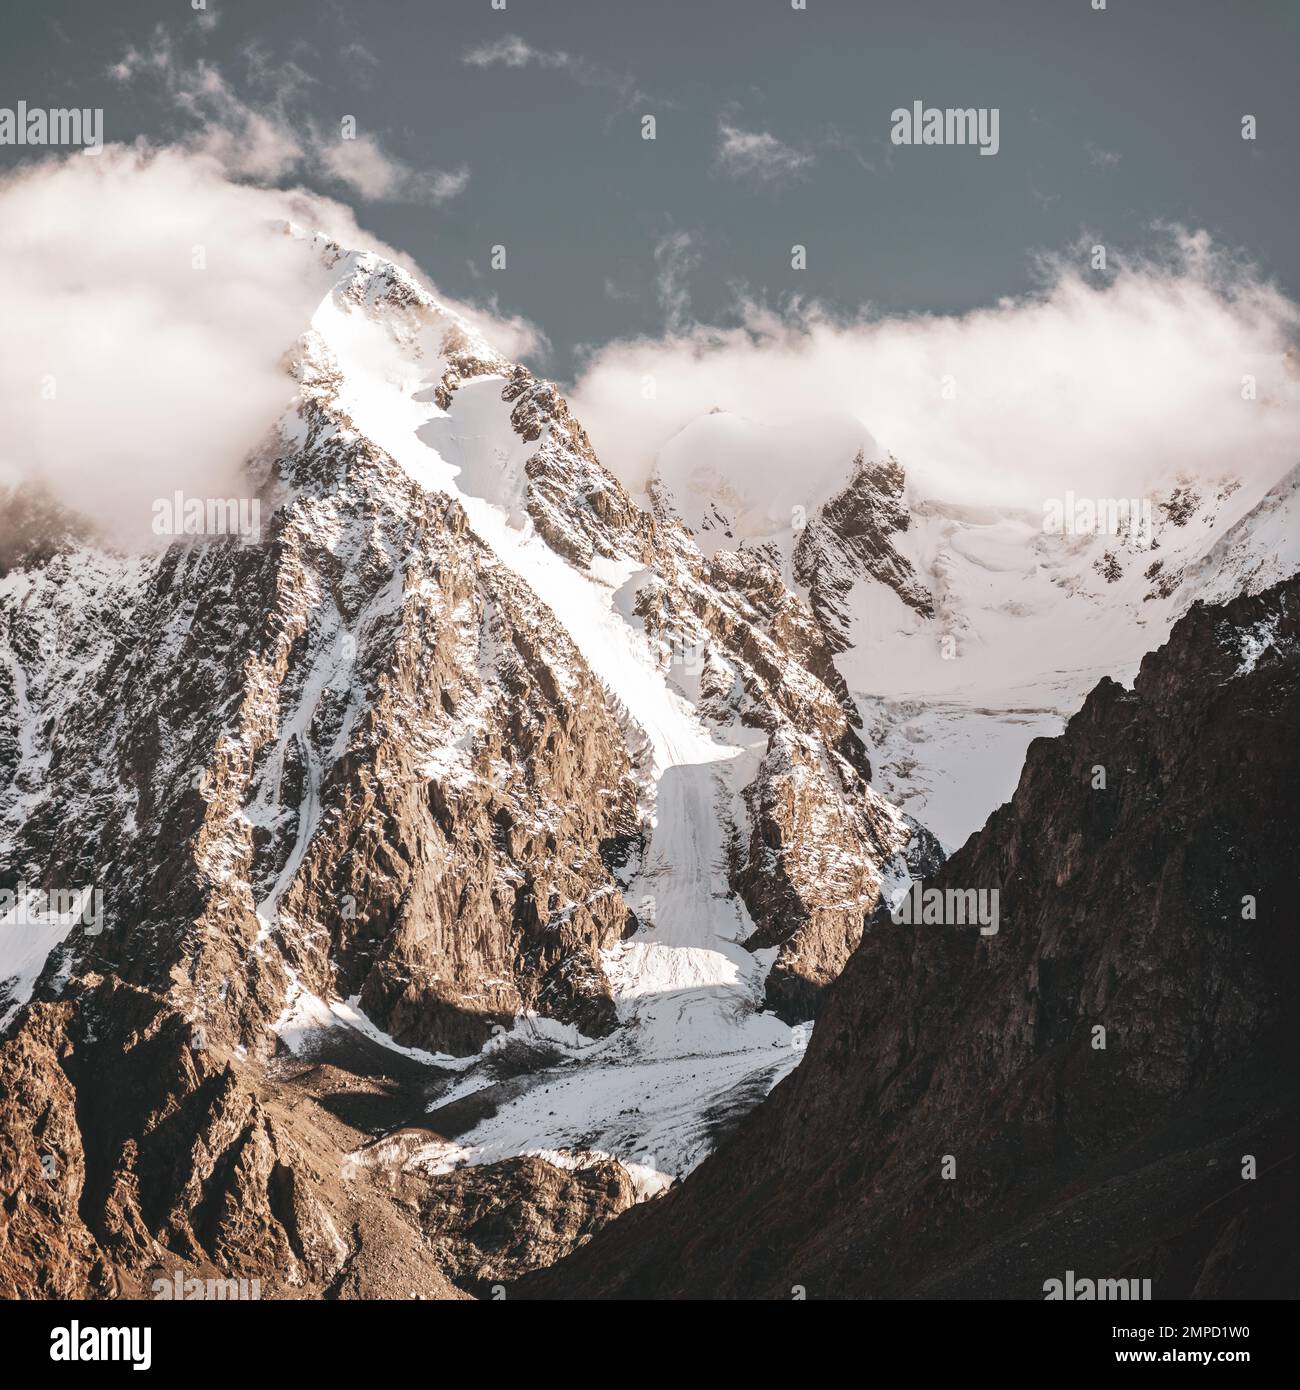 La lengua de un glaciar alpino con nieve desciende de altas montañas de piedra rocosa entre los picos en las nubes en Altai a la sombra durante el día. Foto de stock